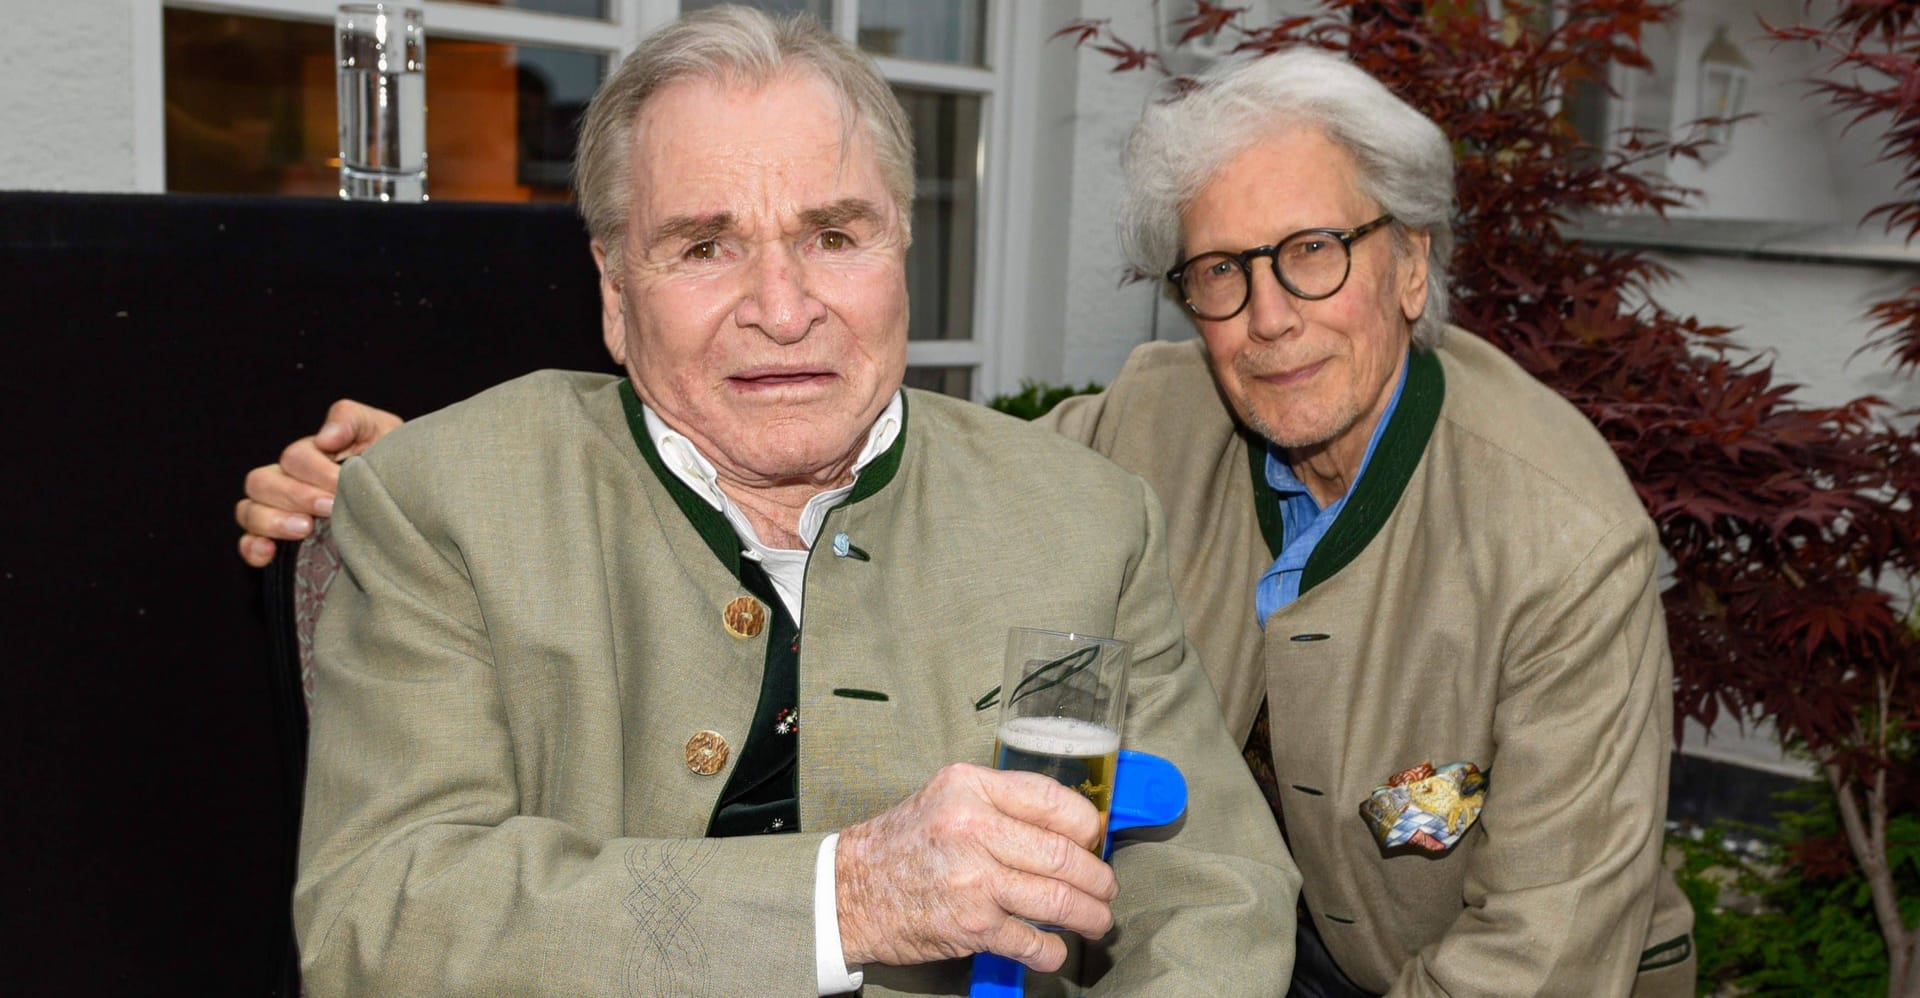 Fritz Wepper (l.) und Bernd Herzsprung sind seit Jahrzehnten eng befreundet. Nun müssen beide mit gesundheitlichen Problemen kämpfen.